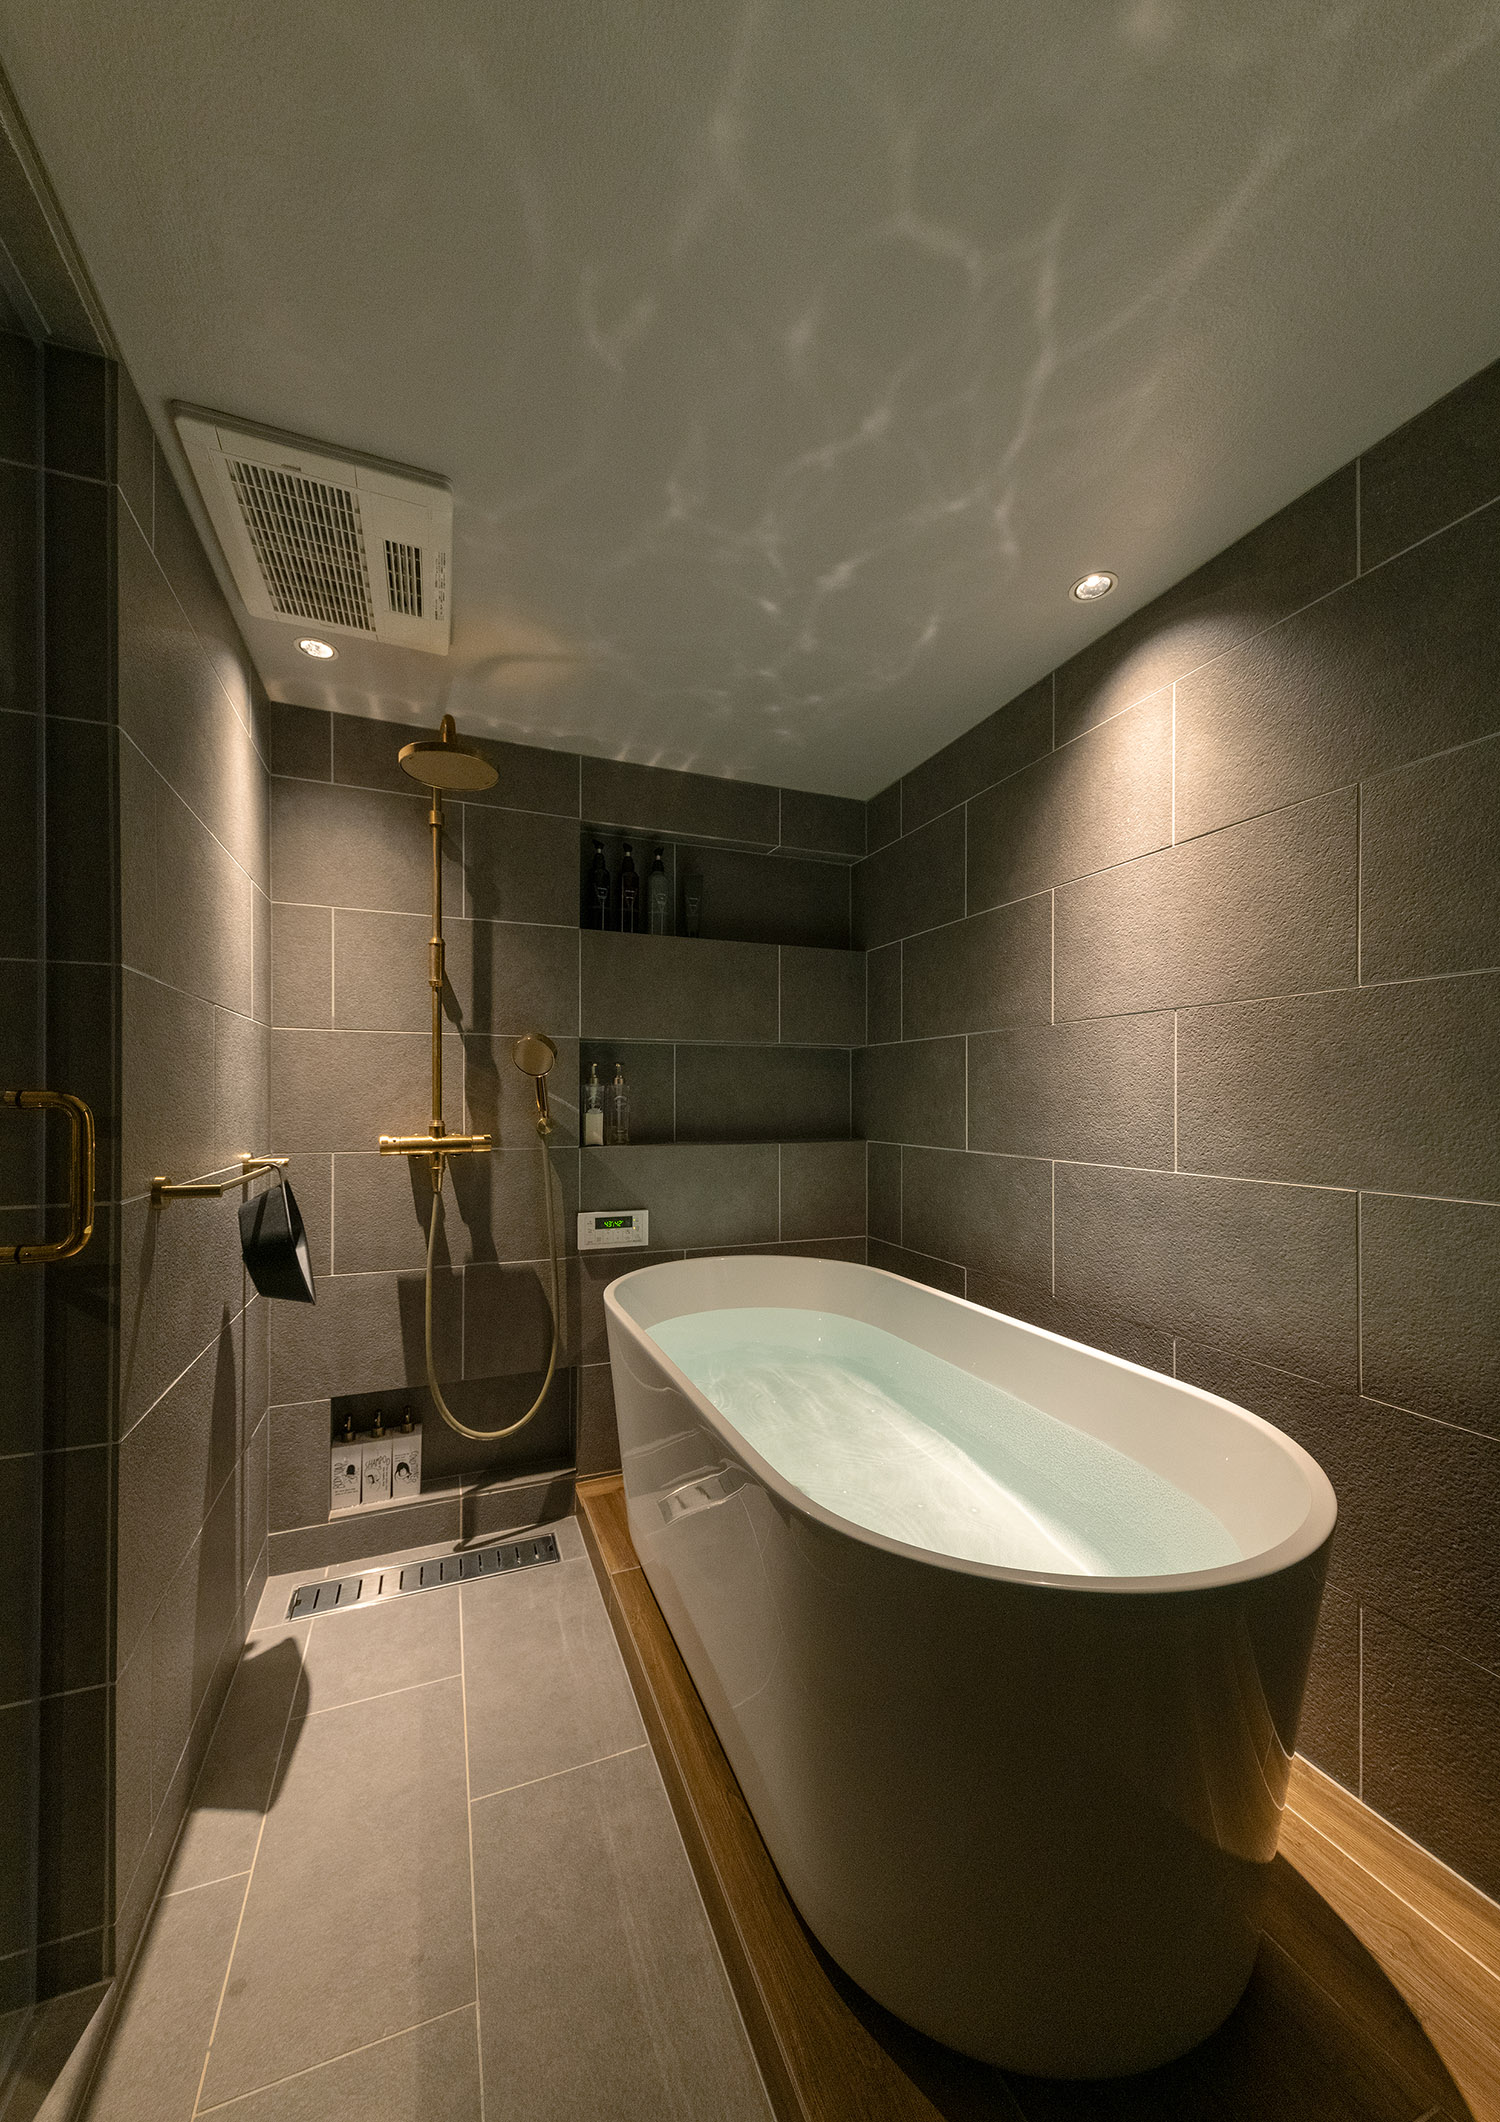 タイル壁で丸い浴槽があるホテルライクで高級感のある在来浴室